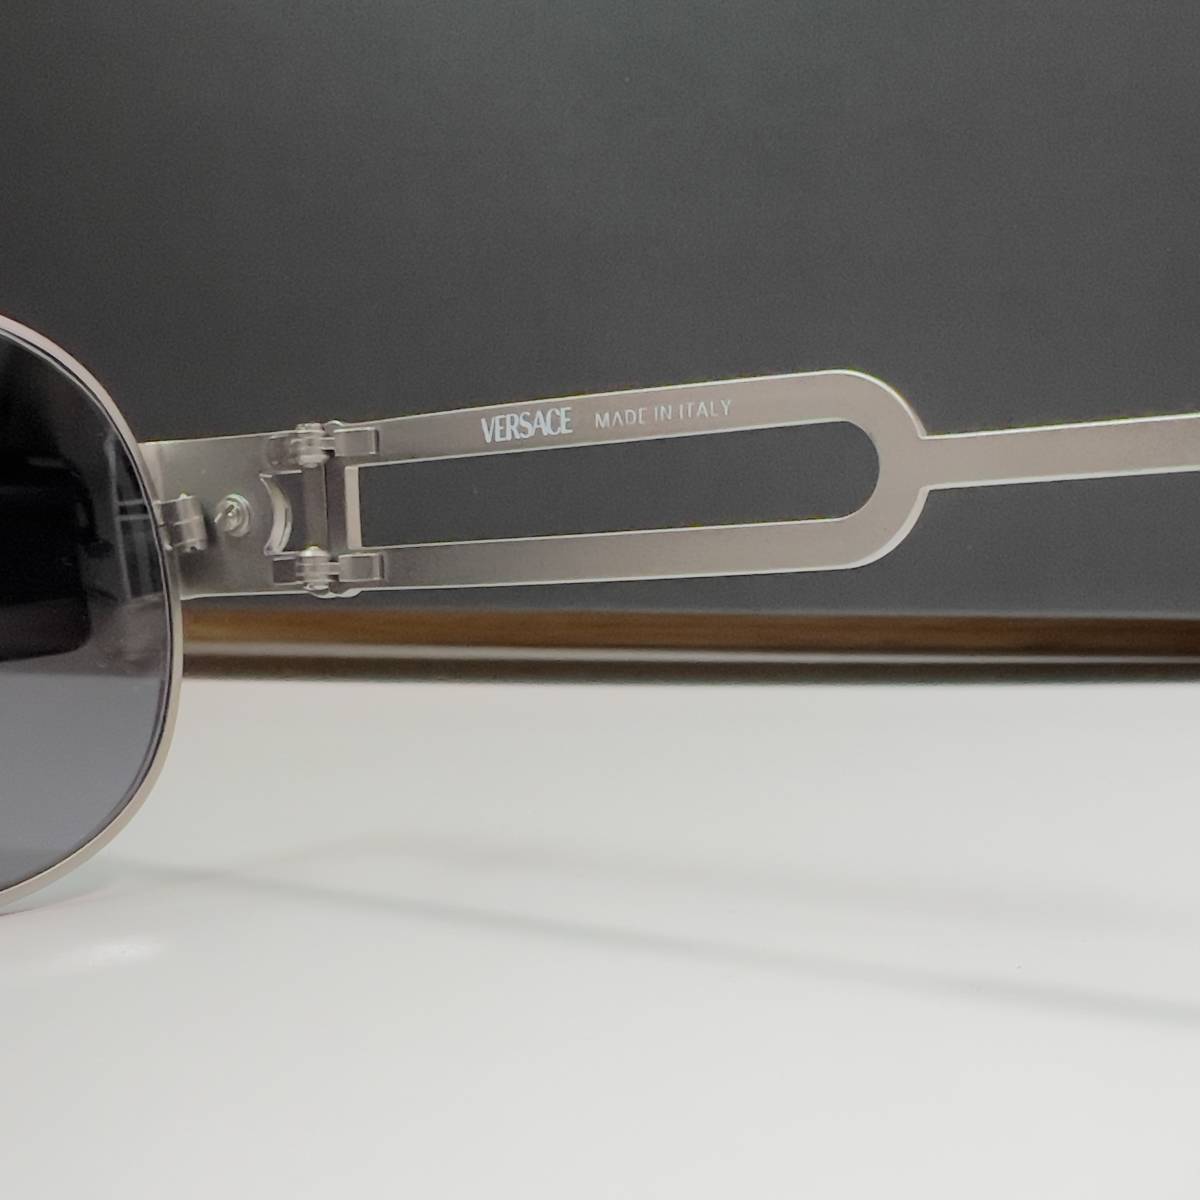 *VERSACE Versace side mete.-sa metal fittings sunglasses S56 silver men's lady's Vintage Teardrop 